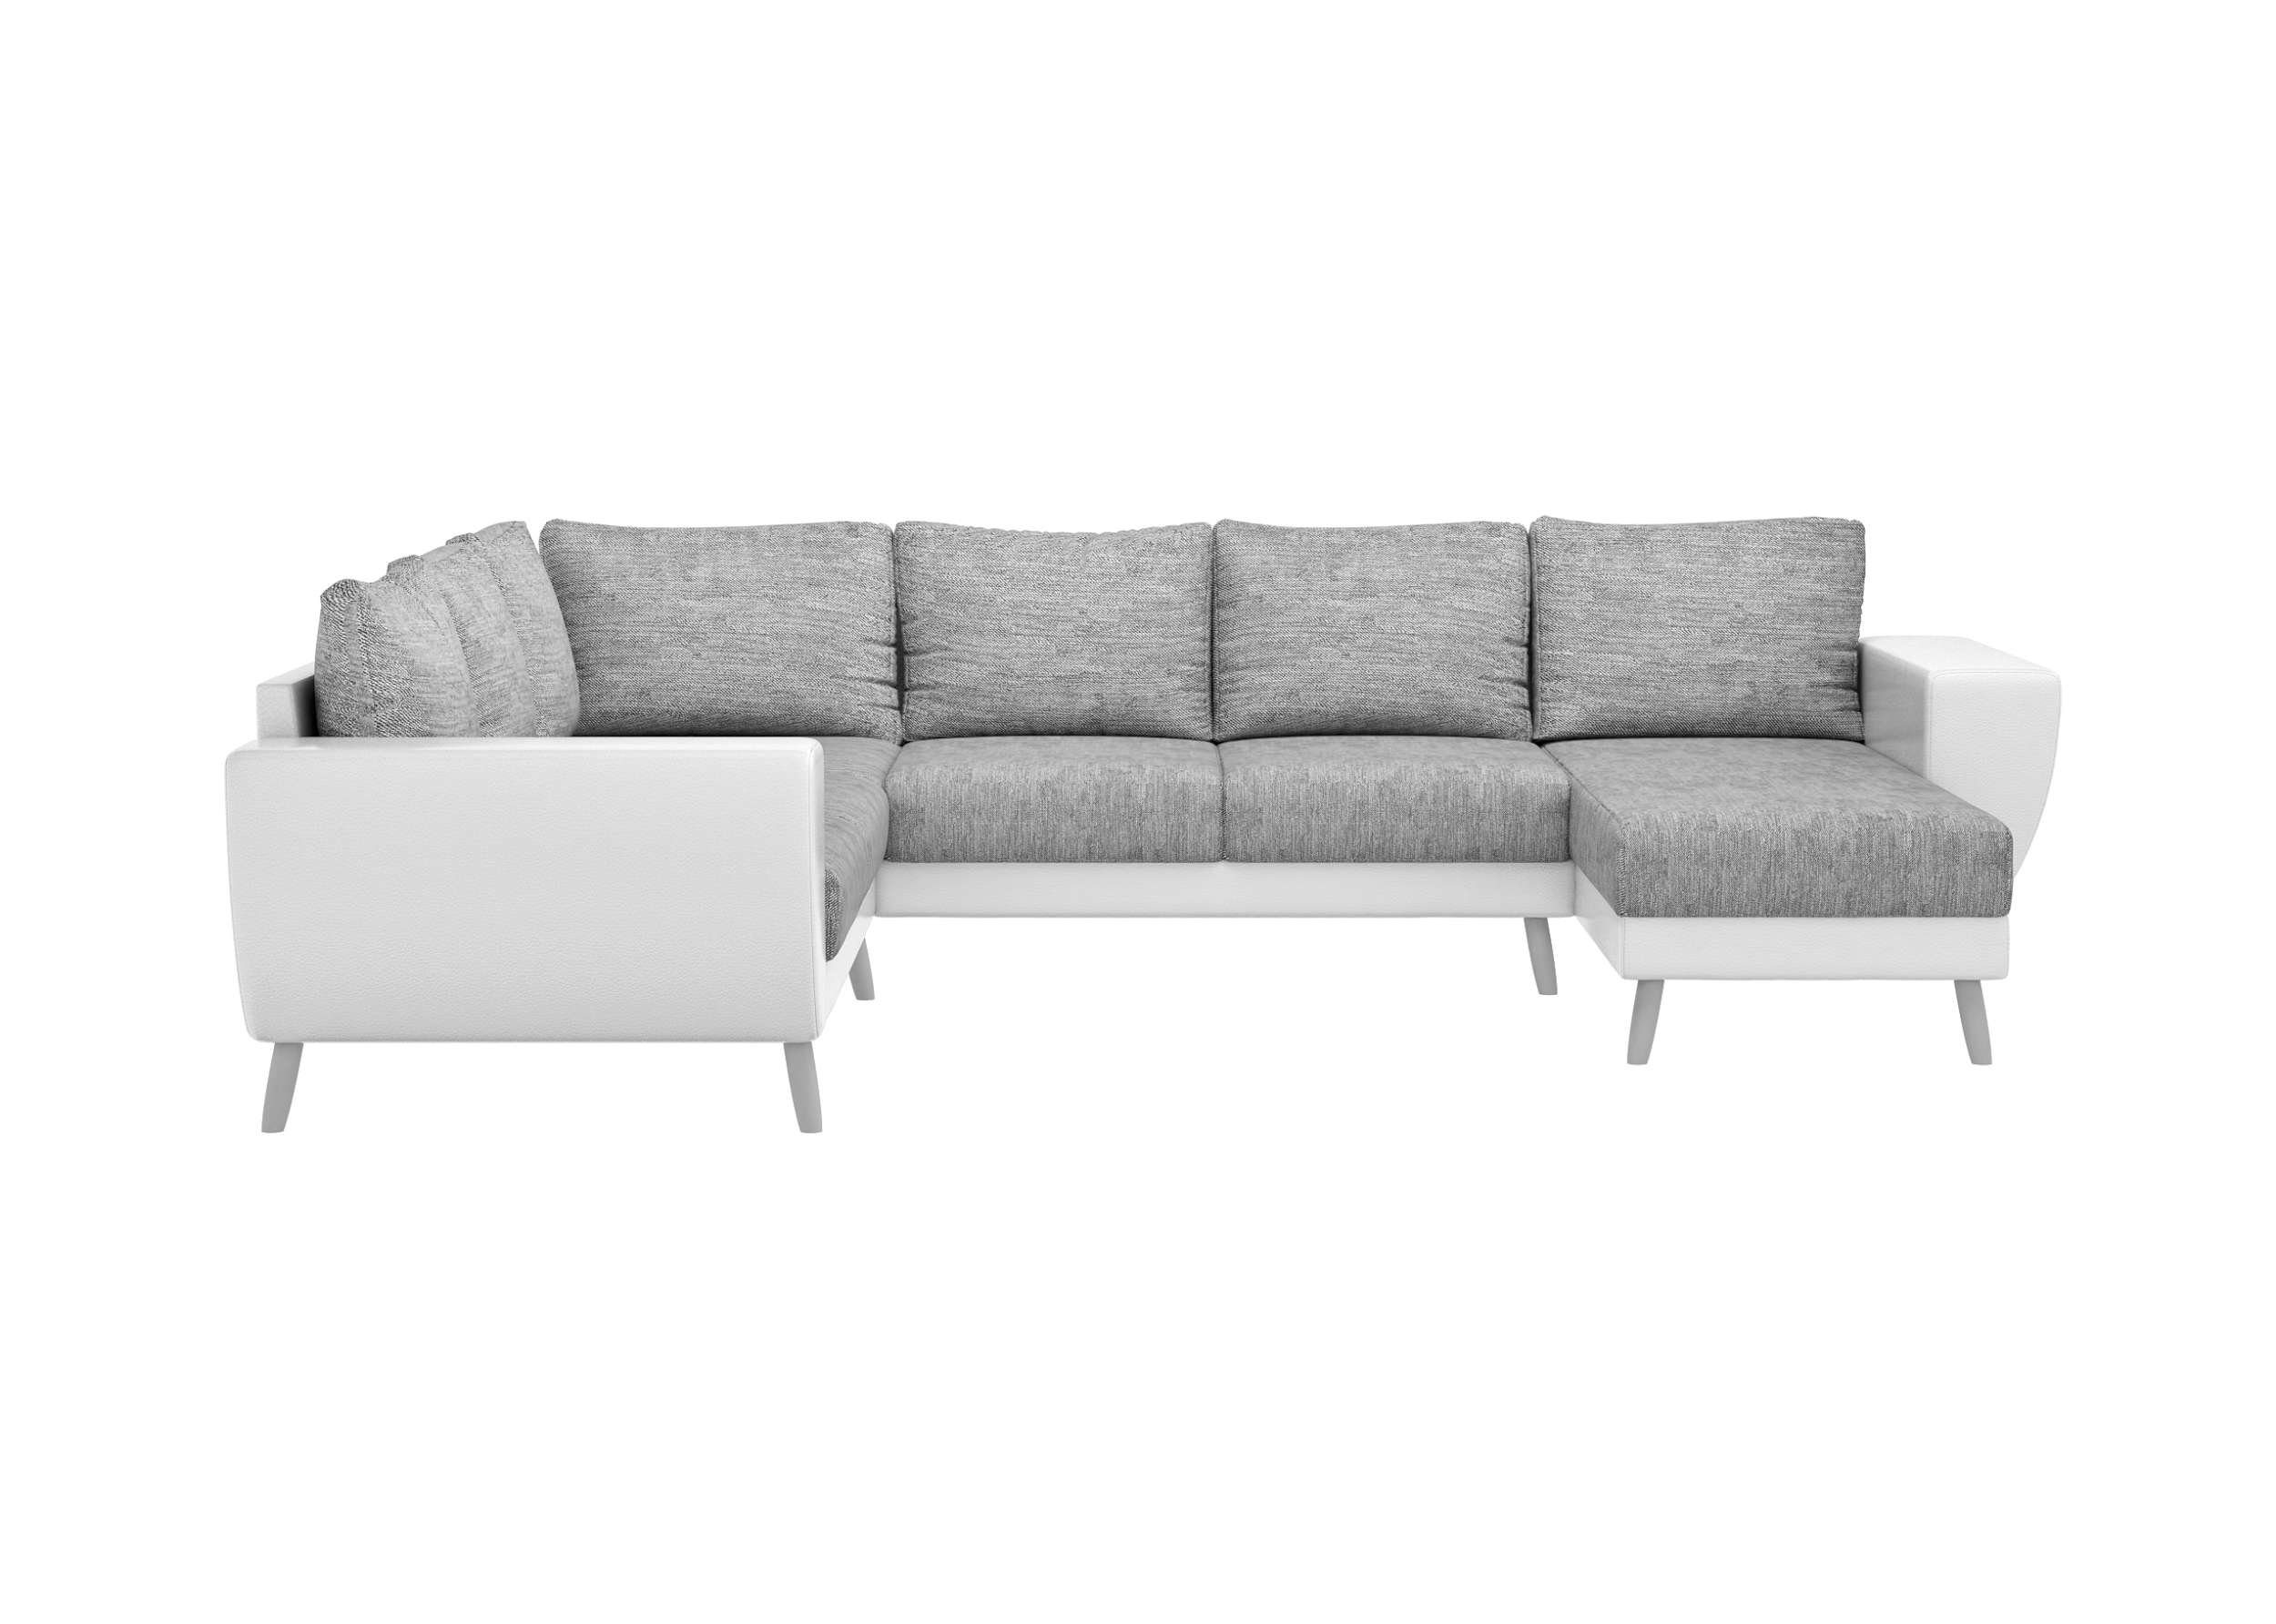 Apollo, oder rechts bestellbar, Modern Wellenfederung Stylefy Design, Wohnlandschaft stellbar, mit Raum U-Form, im links Sofa, frei mane